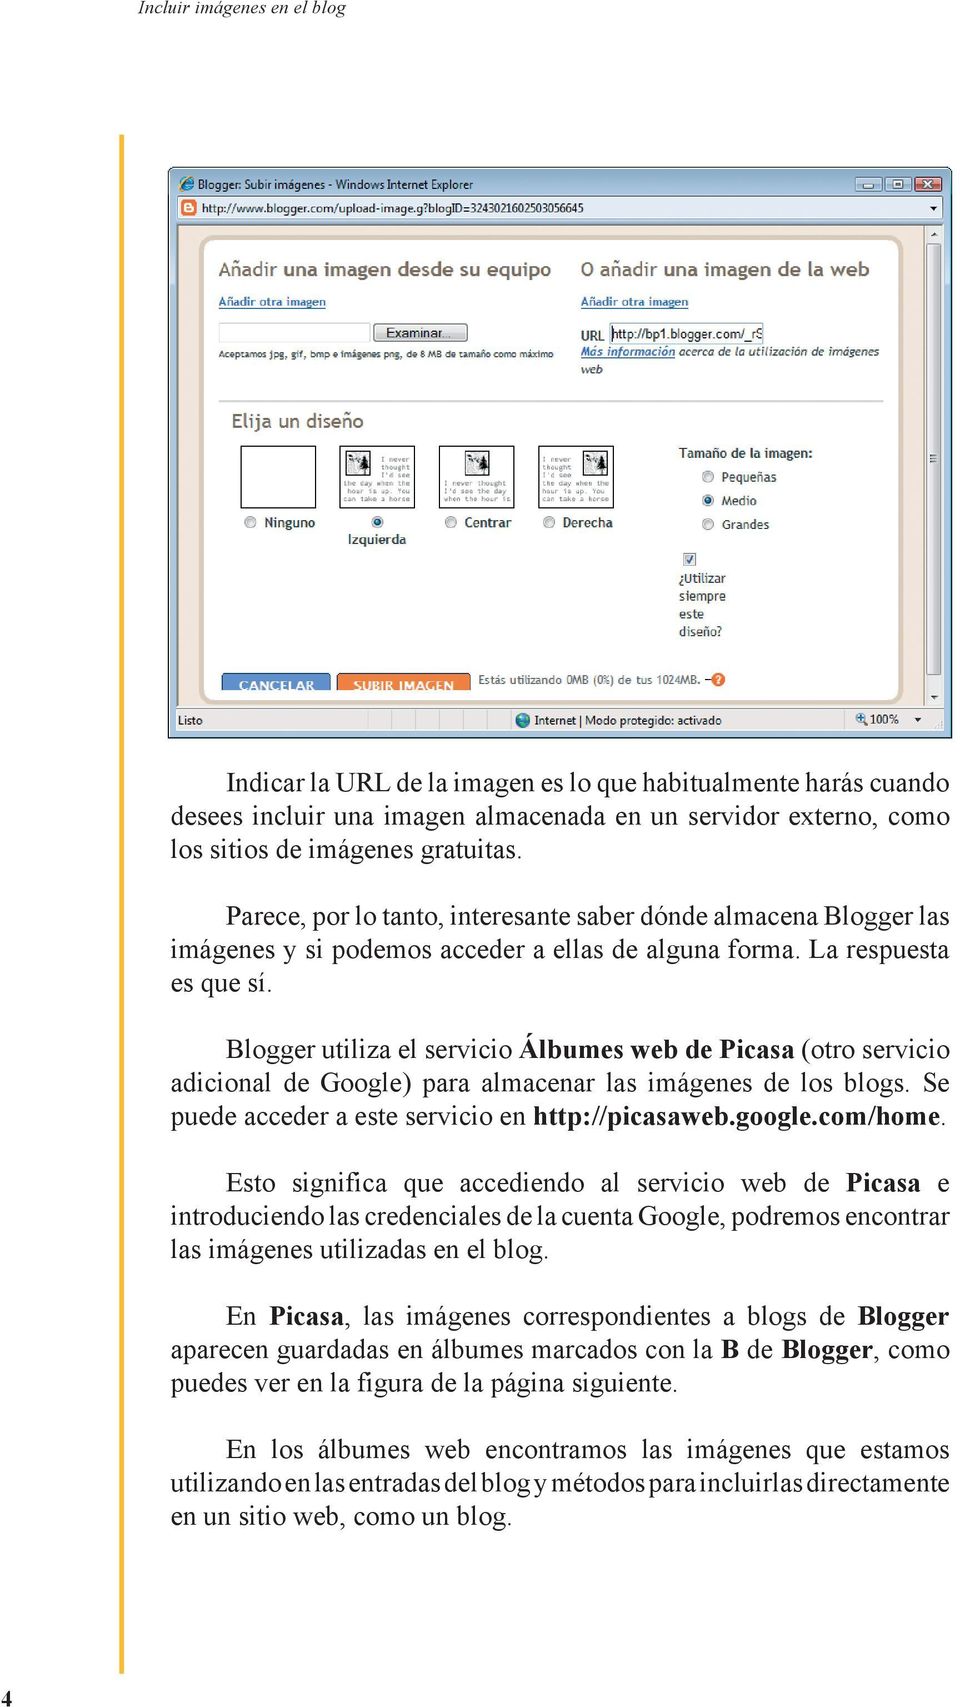 Blogger utiliza el servicio Álbumes web de Picasa (otro servicio adicional de Google) para almacenar las imágenes de los blogs. Se puede acceder a este servicio en http://picasaweb.google.com/home.